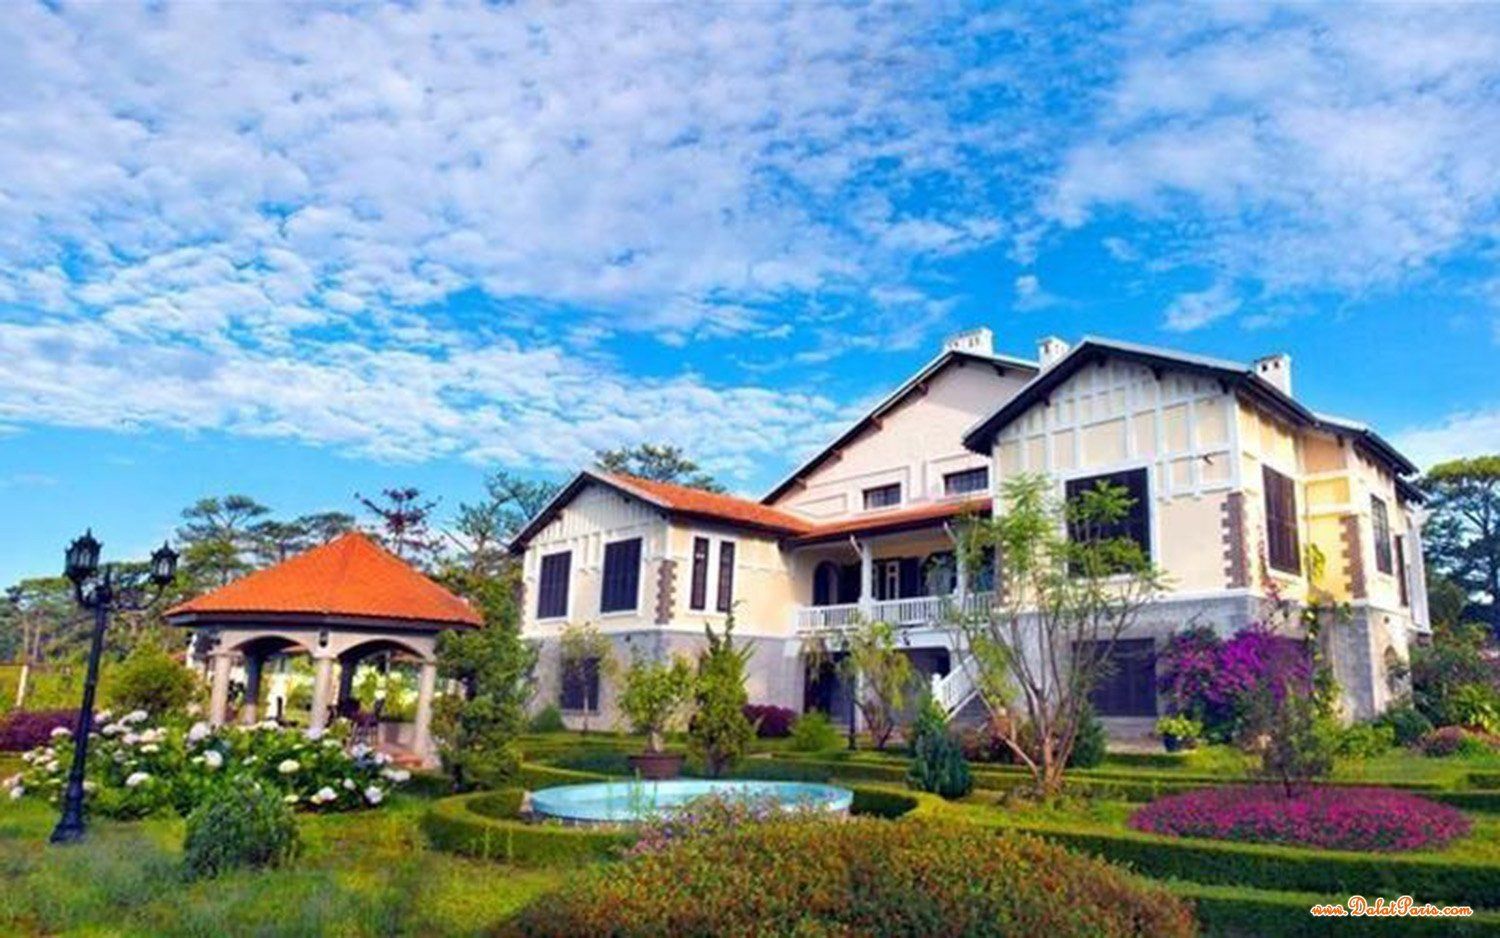 Đất nền Biệt Thự thuộc KQH Huỳnh Tấn Phát gần Trung Tâm TP. Đà Lạt, gần vòng xoay trại mát, thích hợp kinh doanh khách sạn, cà phê sân vư�